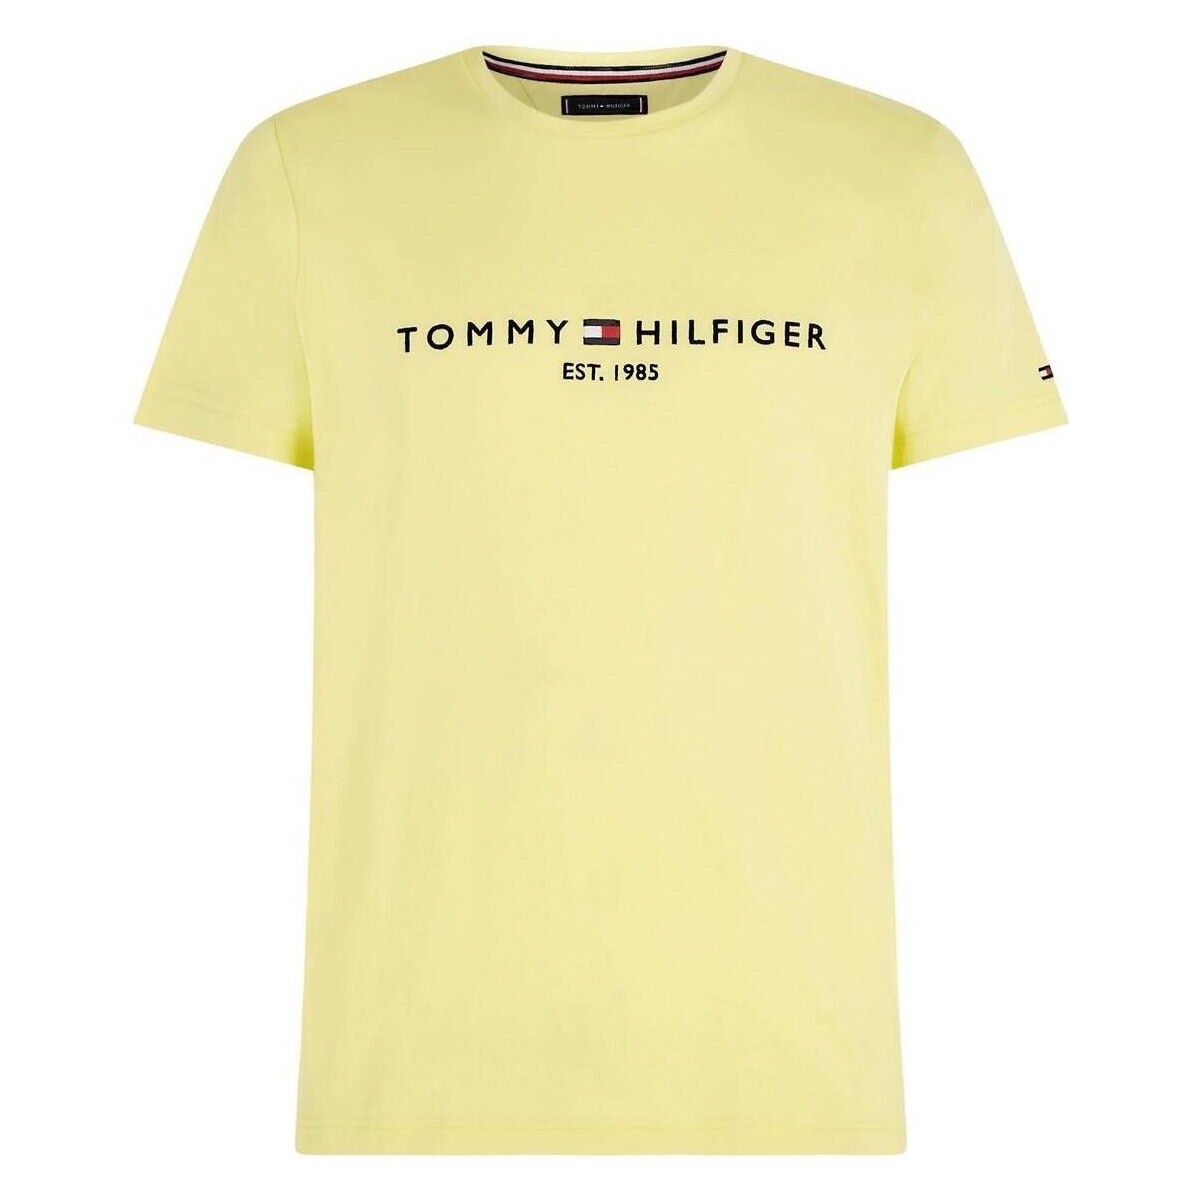 Abbigliamento T-shirt maniche corte Tommy Hilfiger  Giallo